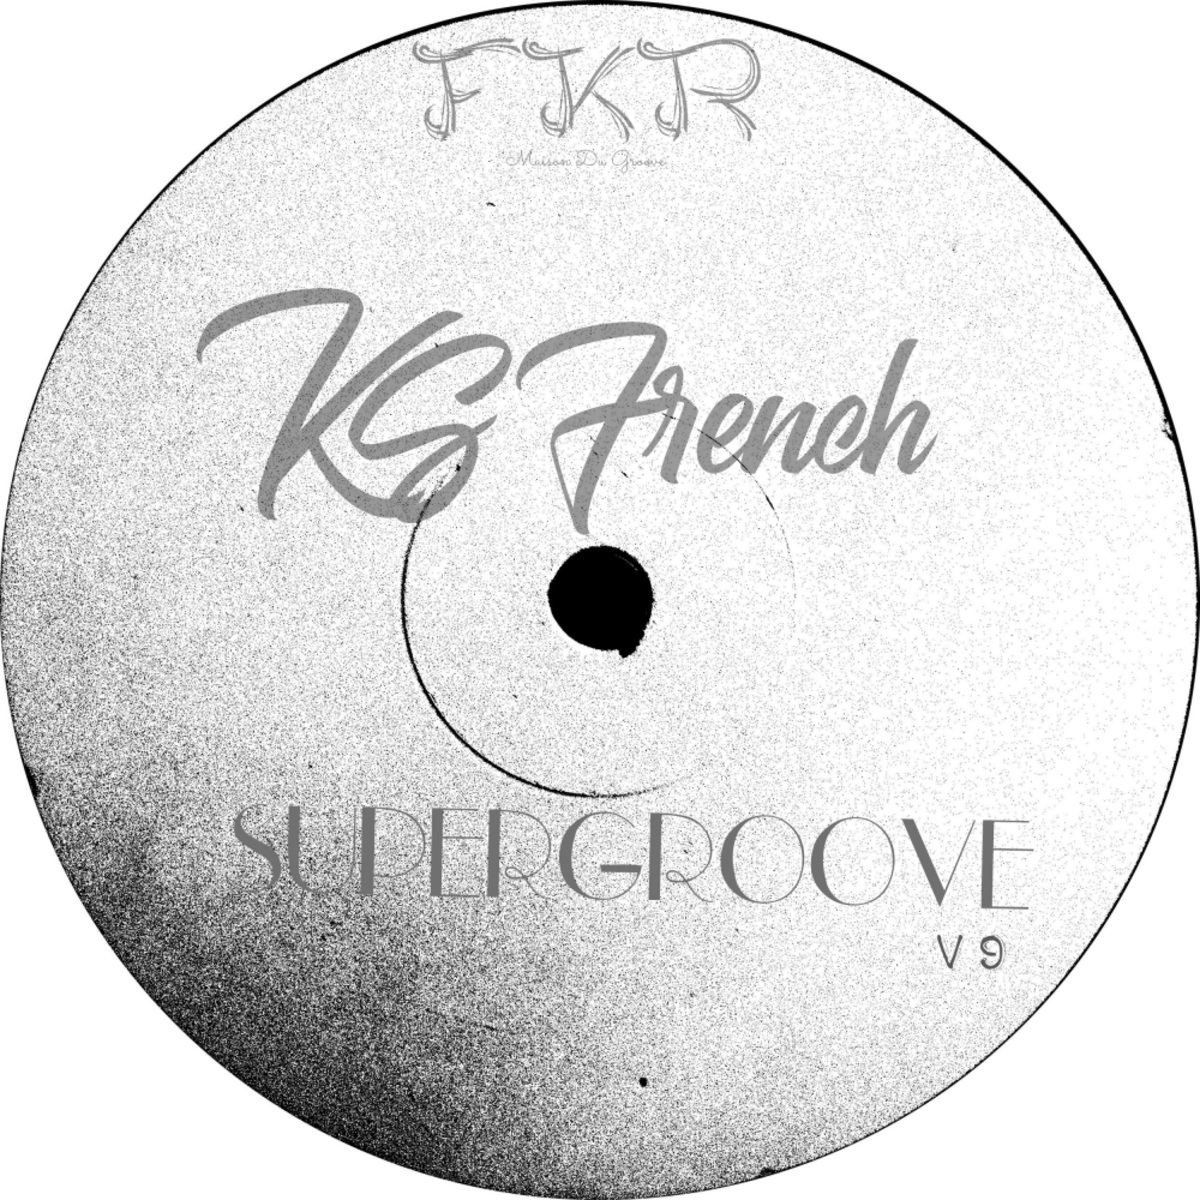 Ks French - Super Groove V9 / FKR